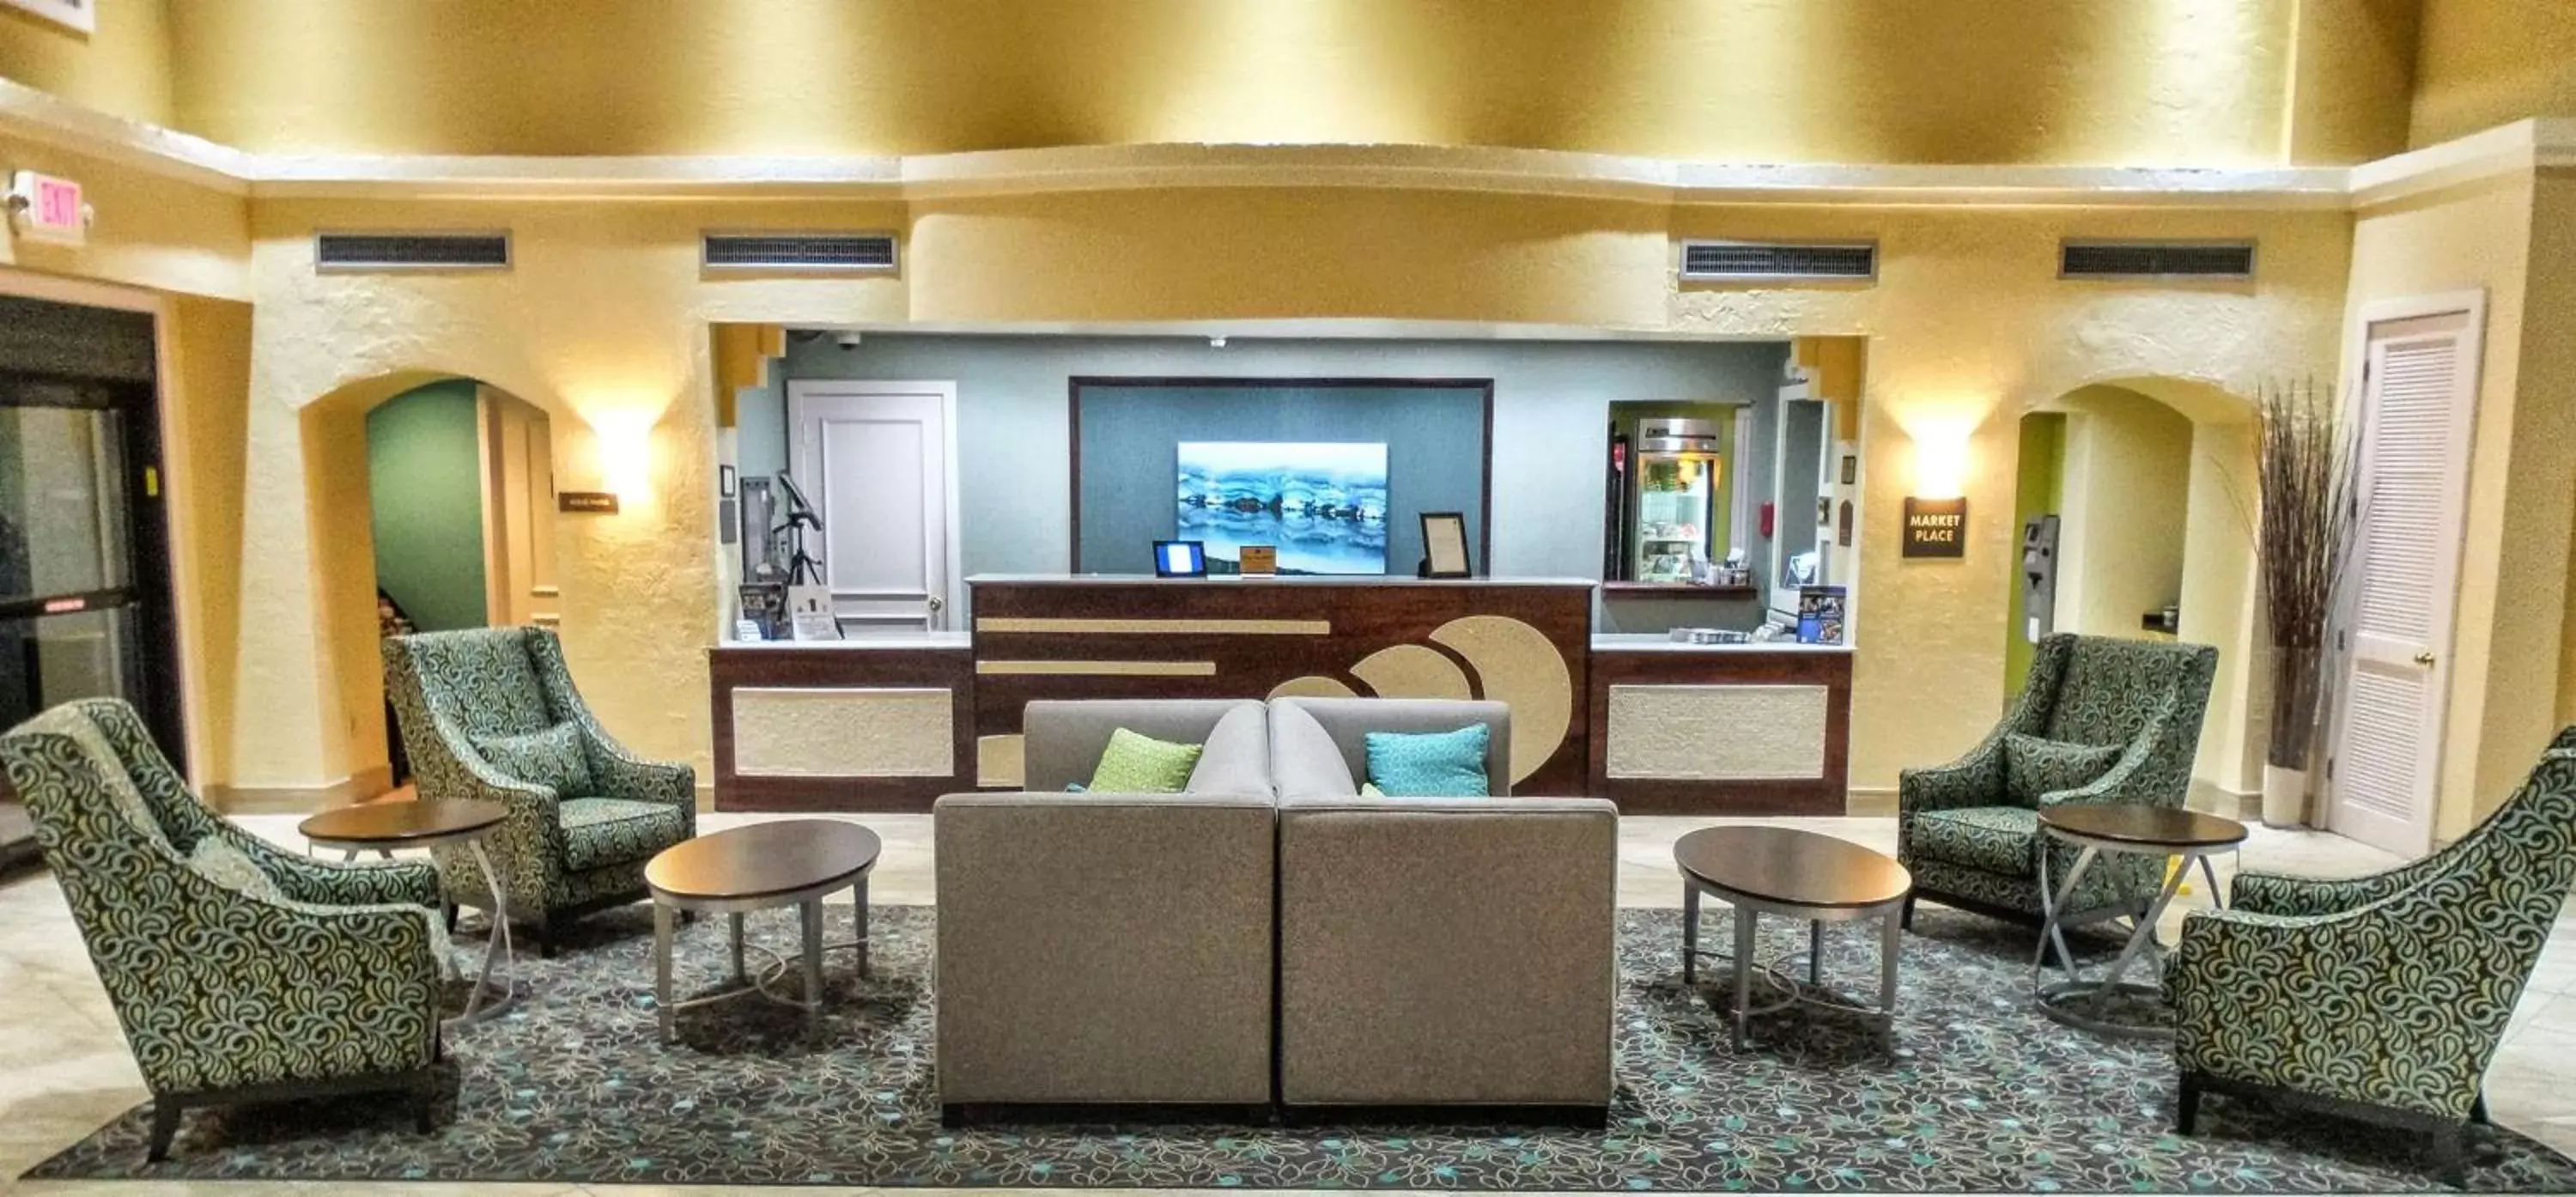 Lobby or reception in Best Western Plus Deerfield Beach Hotel & Suites